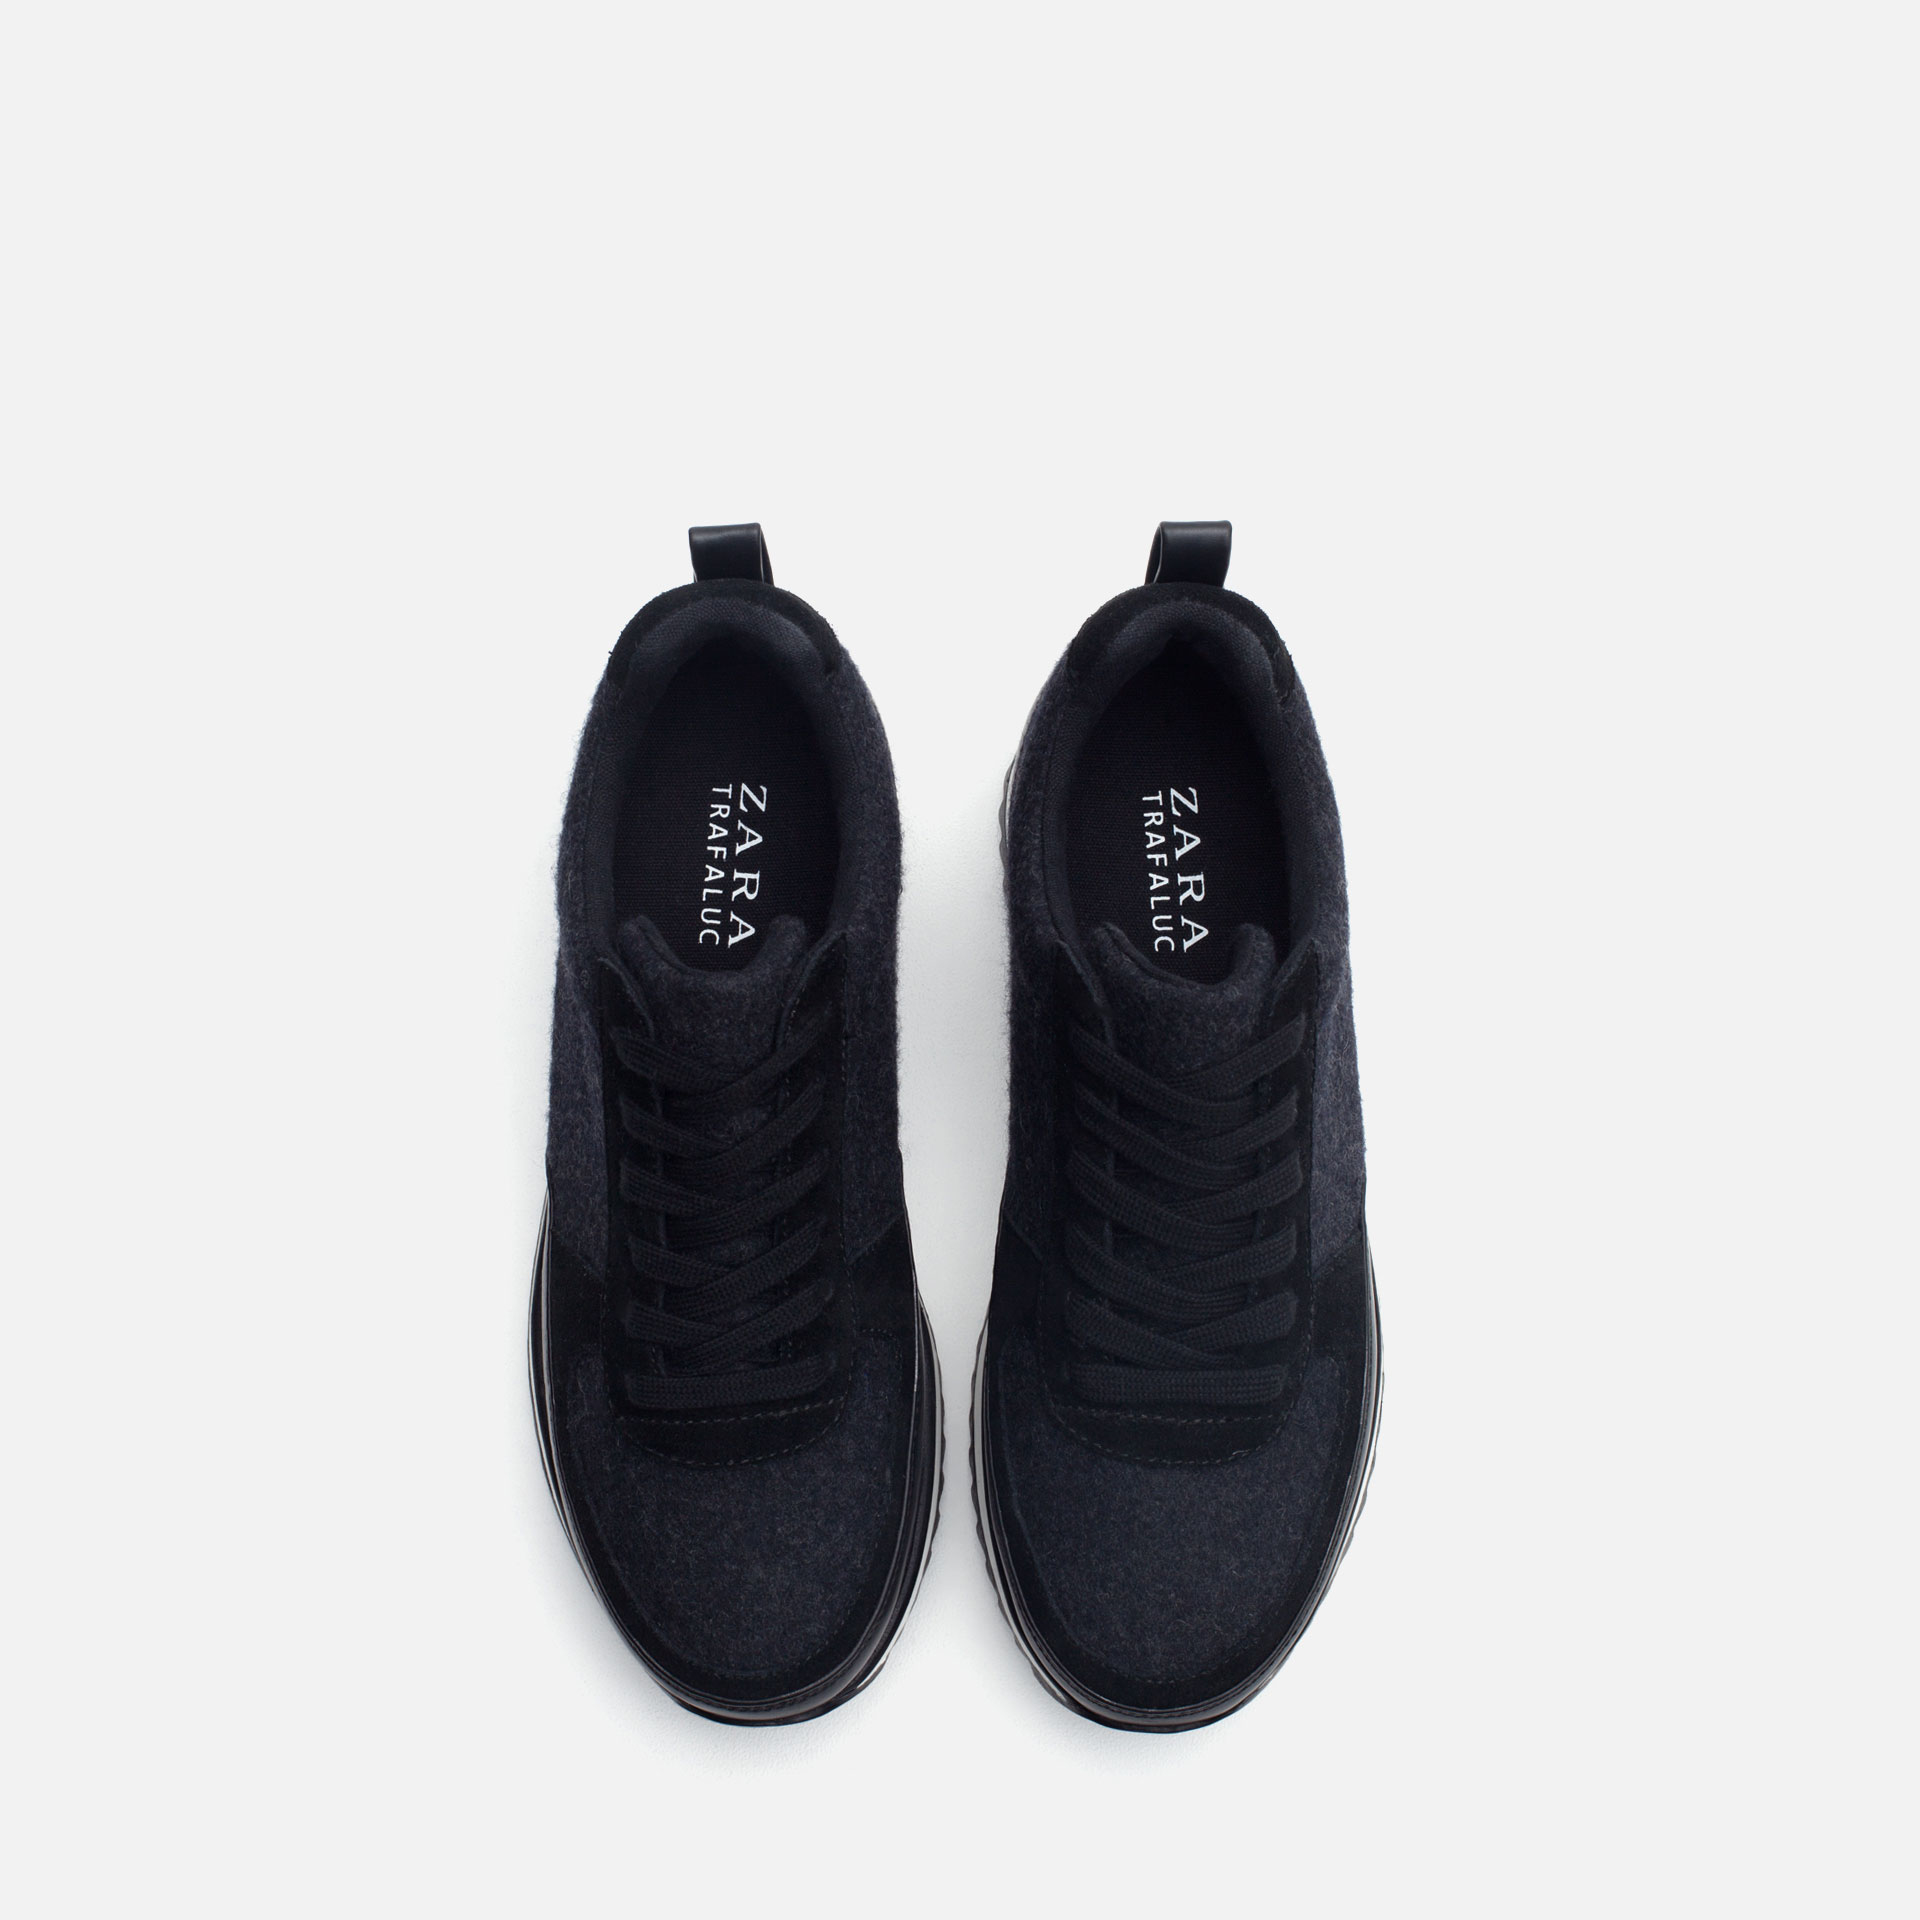 Zara Combined Sneakers in Black | Lyst